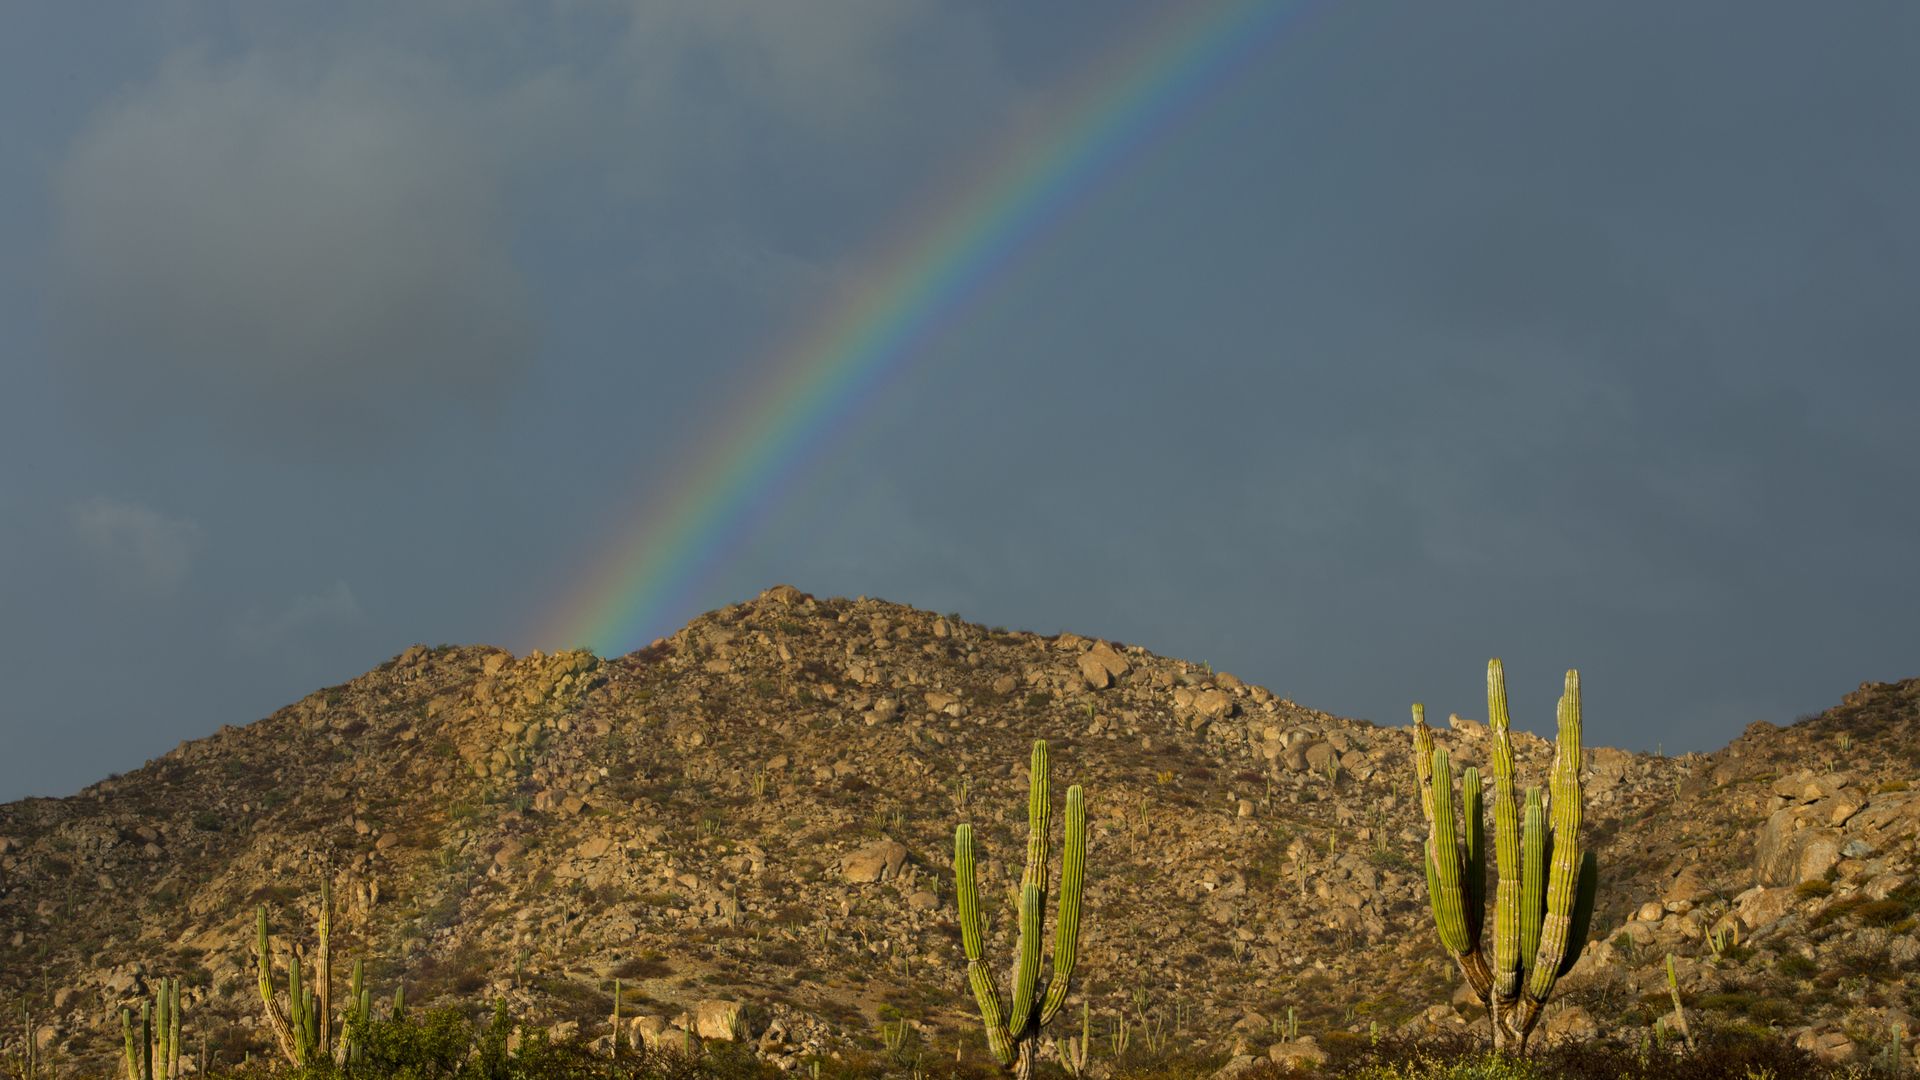 A rainbow over a desert landscape